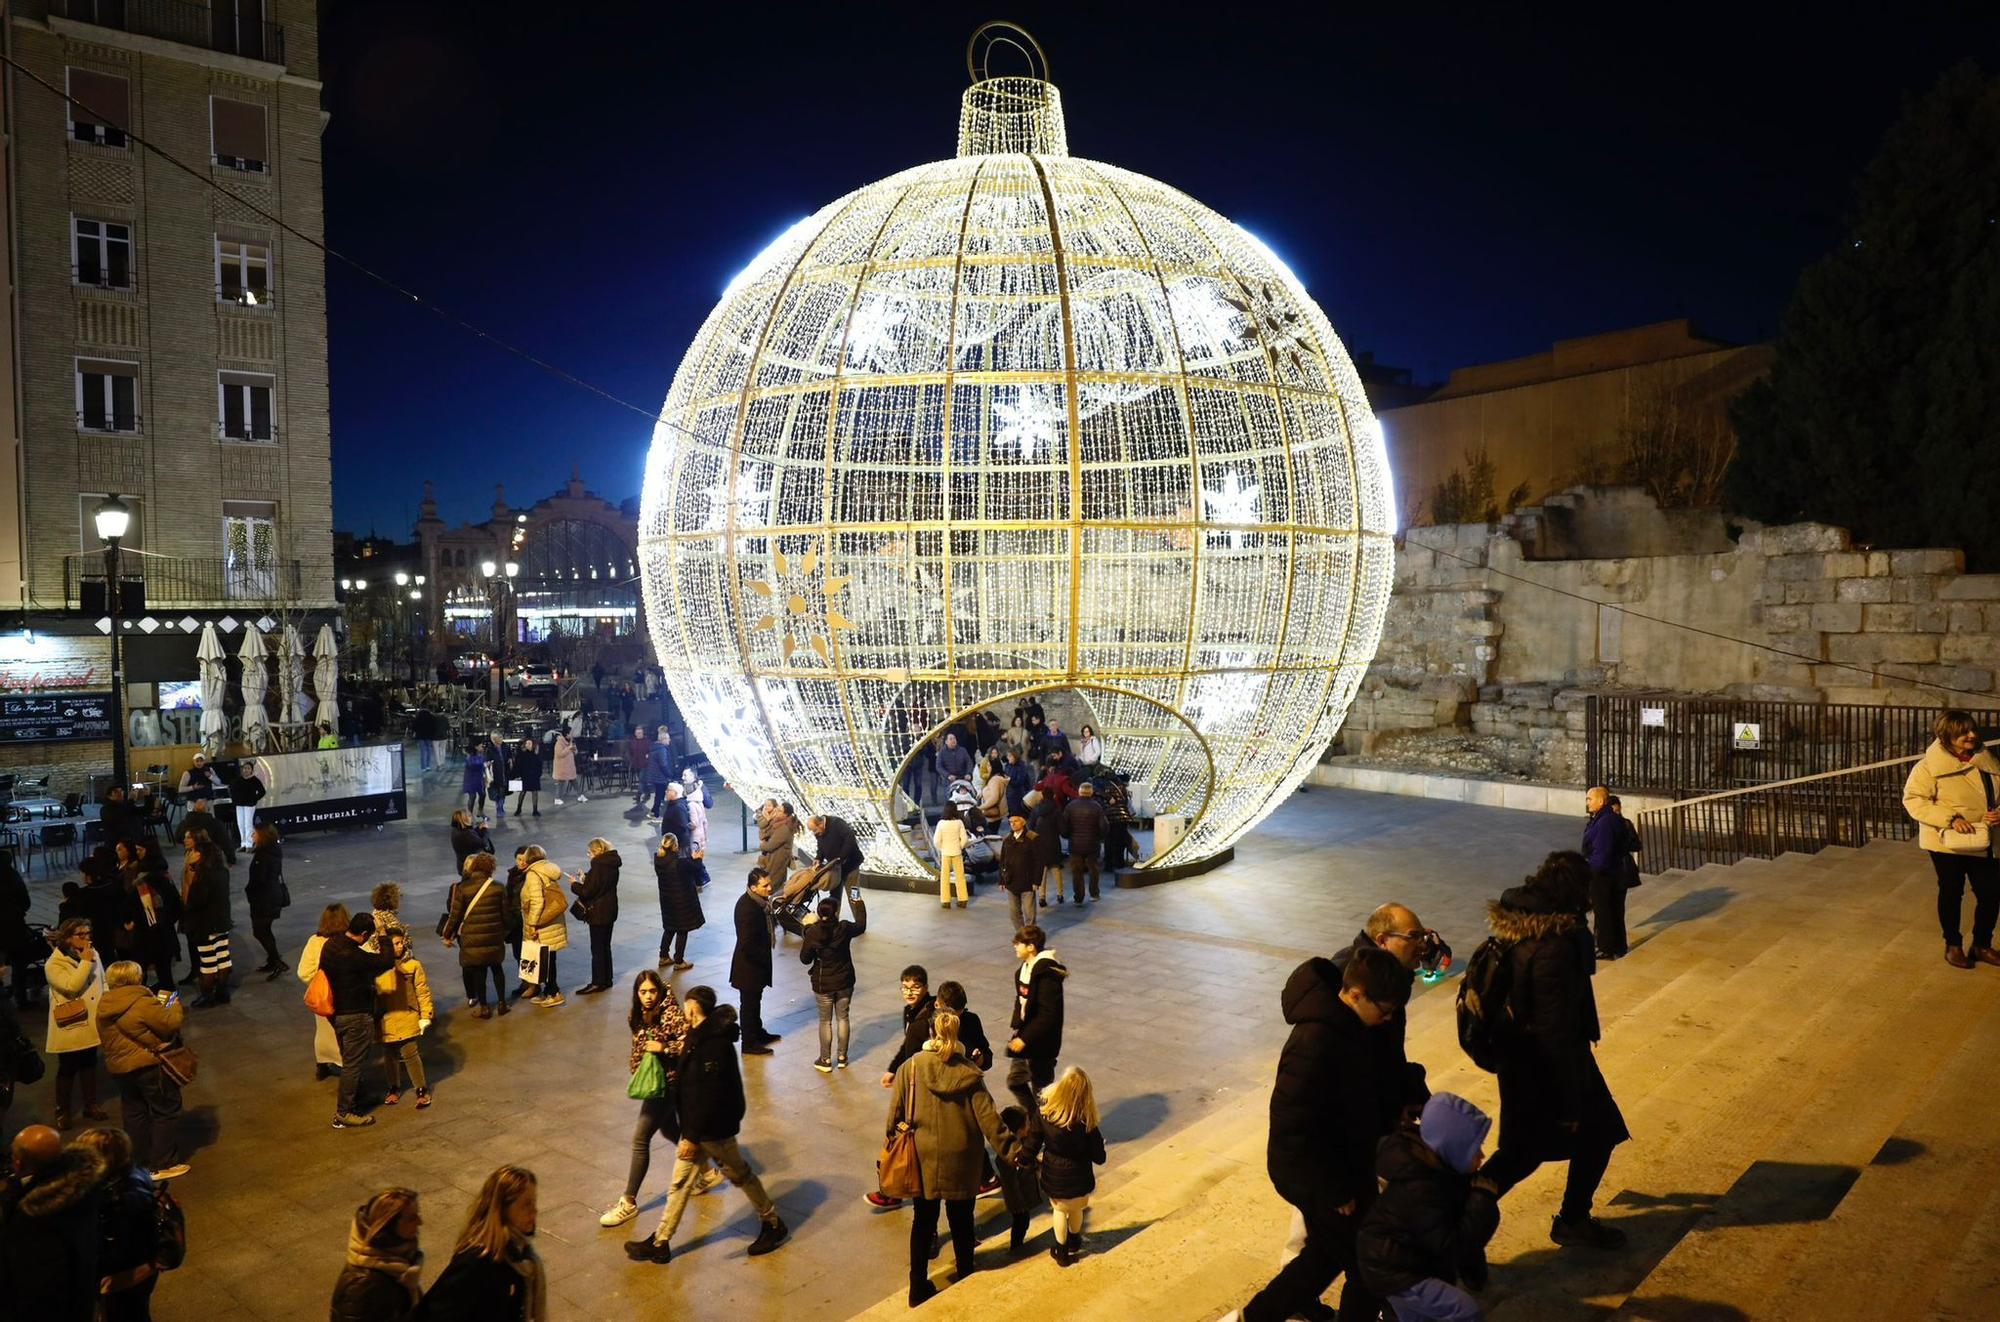 En imágenes | Ambientazo navideño en la Plaza del Pilar de Zaragoza